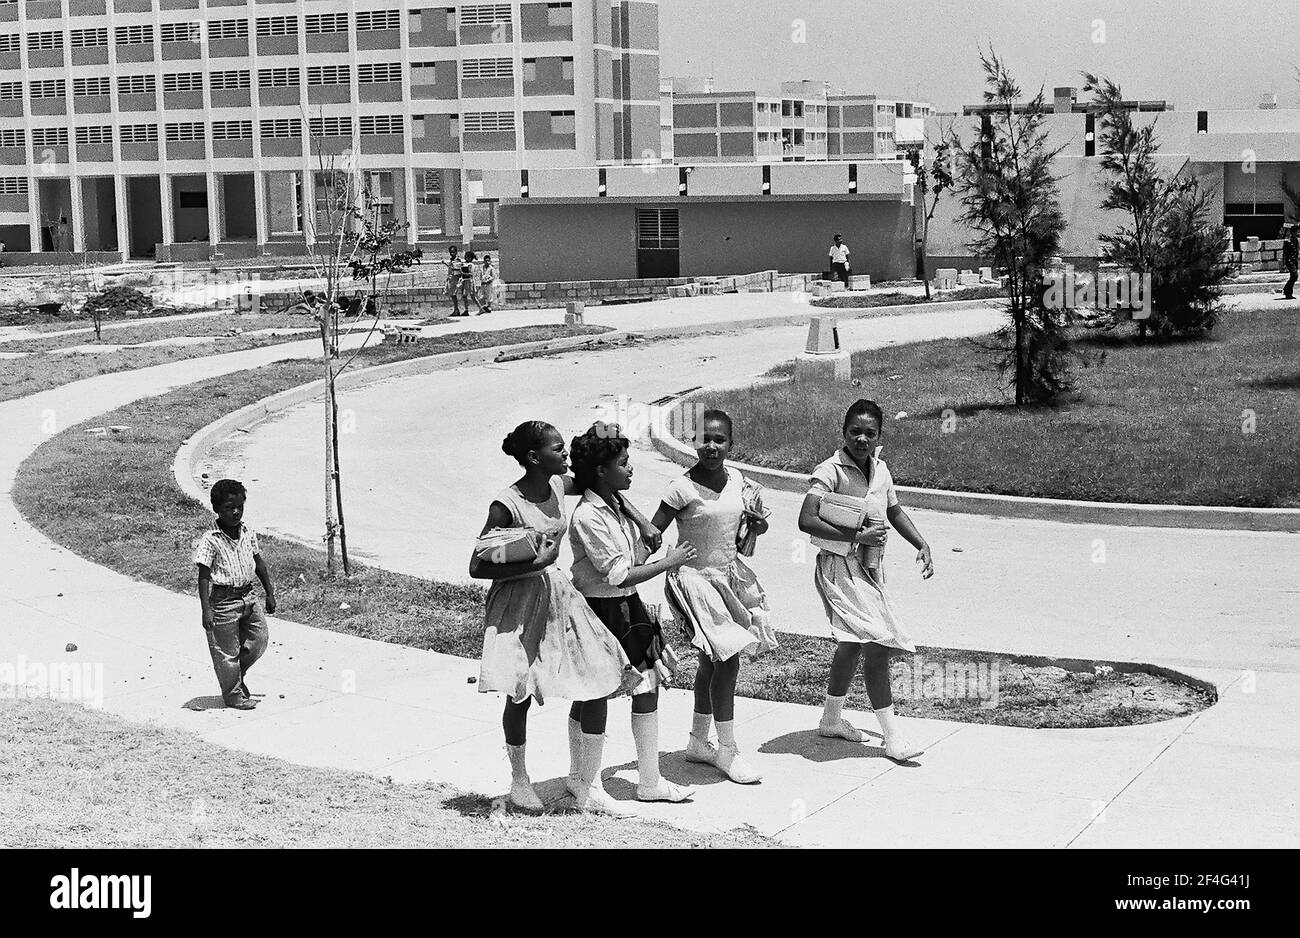 Le logement est visible à Habana Este, Cuba avec des enfants marchant dans un groupe sur un chemin près des bâtiments, un petit groupe devant un enfant plus jeune en retard, 1964. De la collection de photographies Deena Stryker. () Banque D'Images